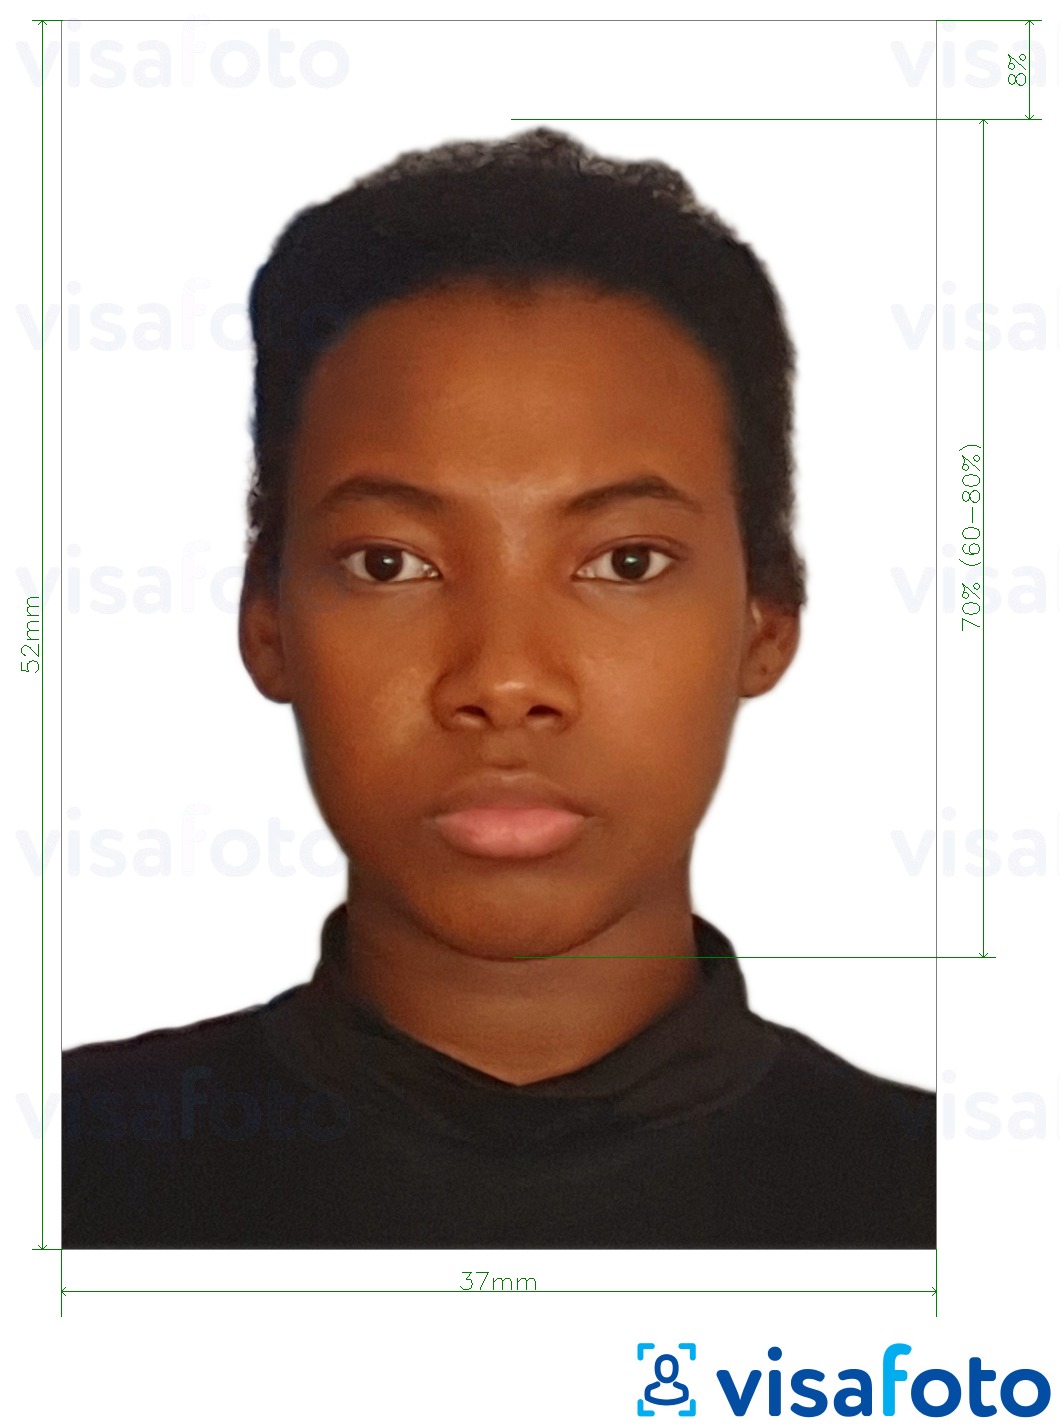 Exemple de foto per a Visa de Namíbia 37x52mm (3.7x5.2 cm) amb la mida exacta especificada